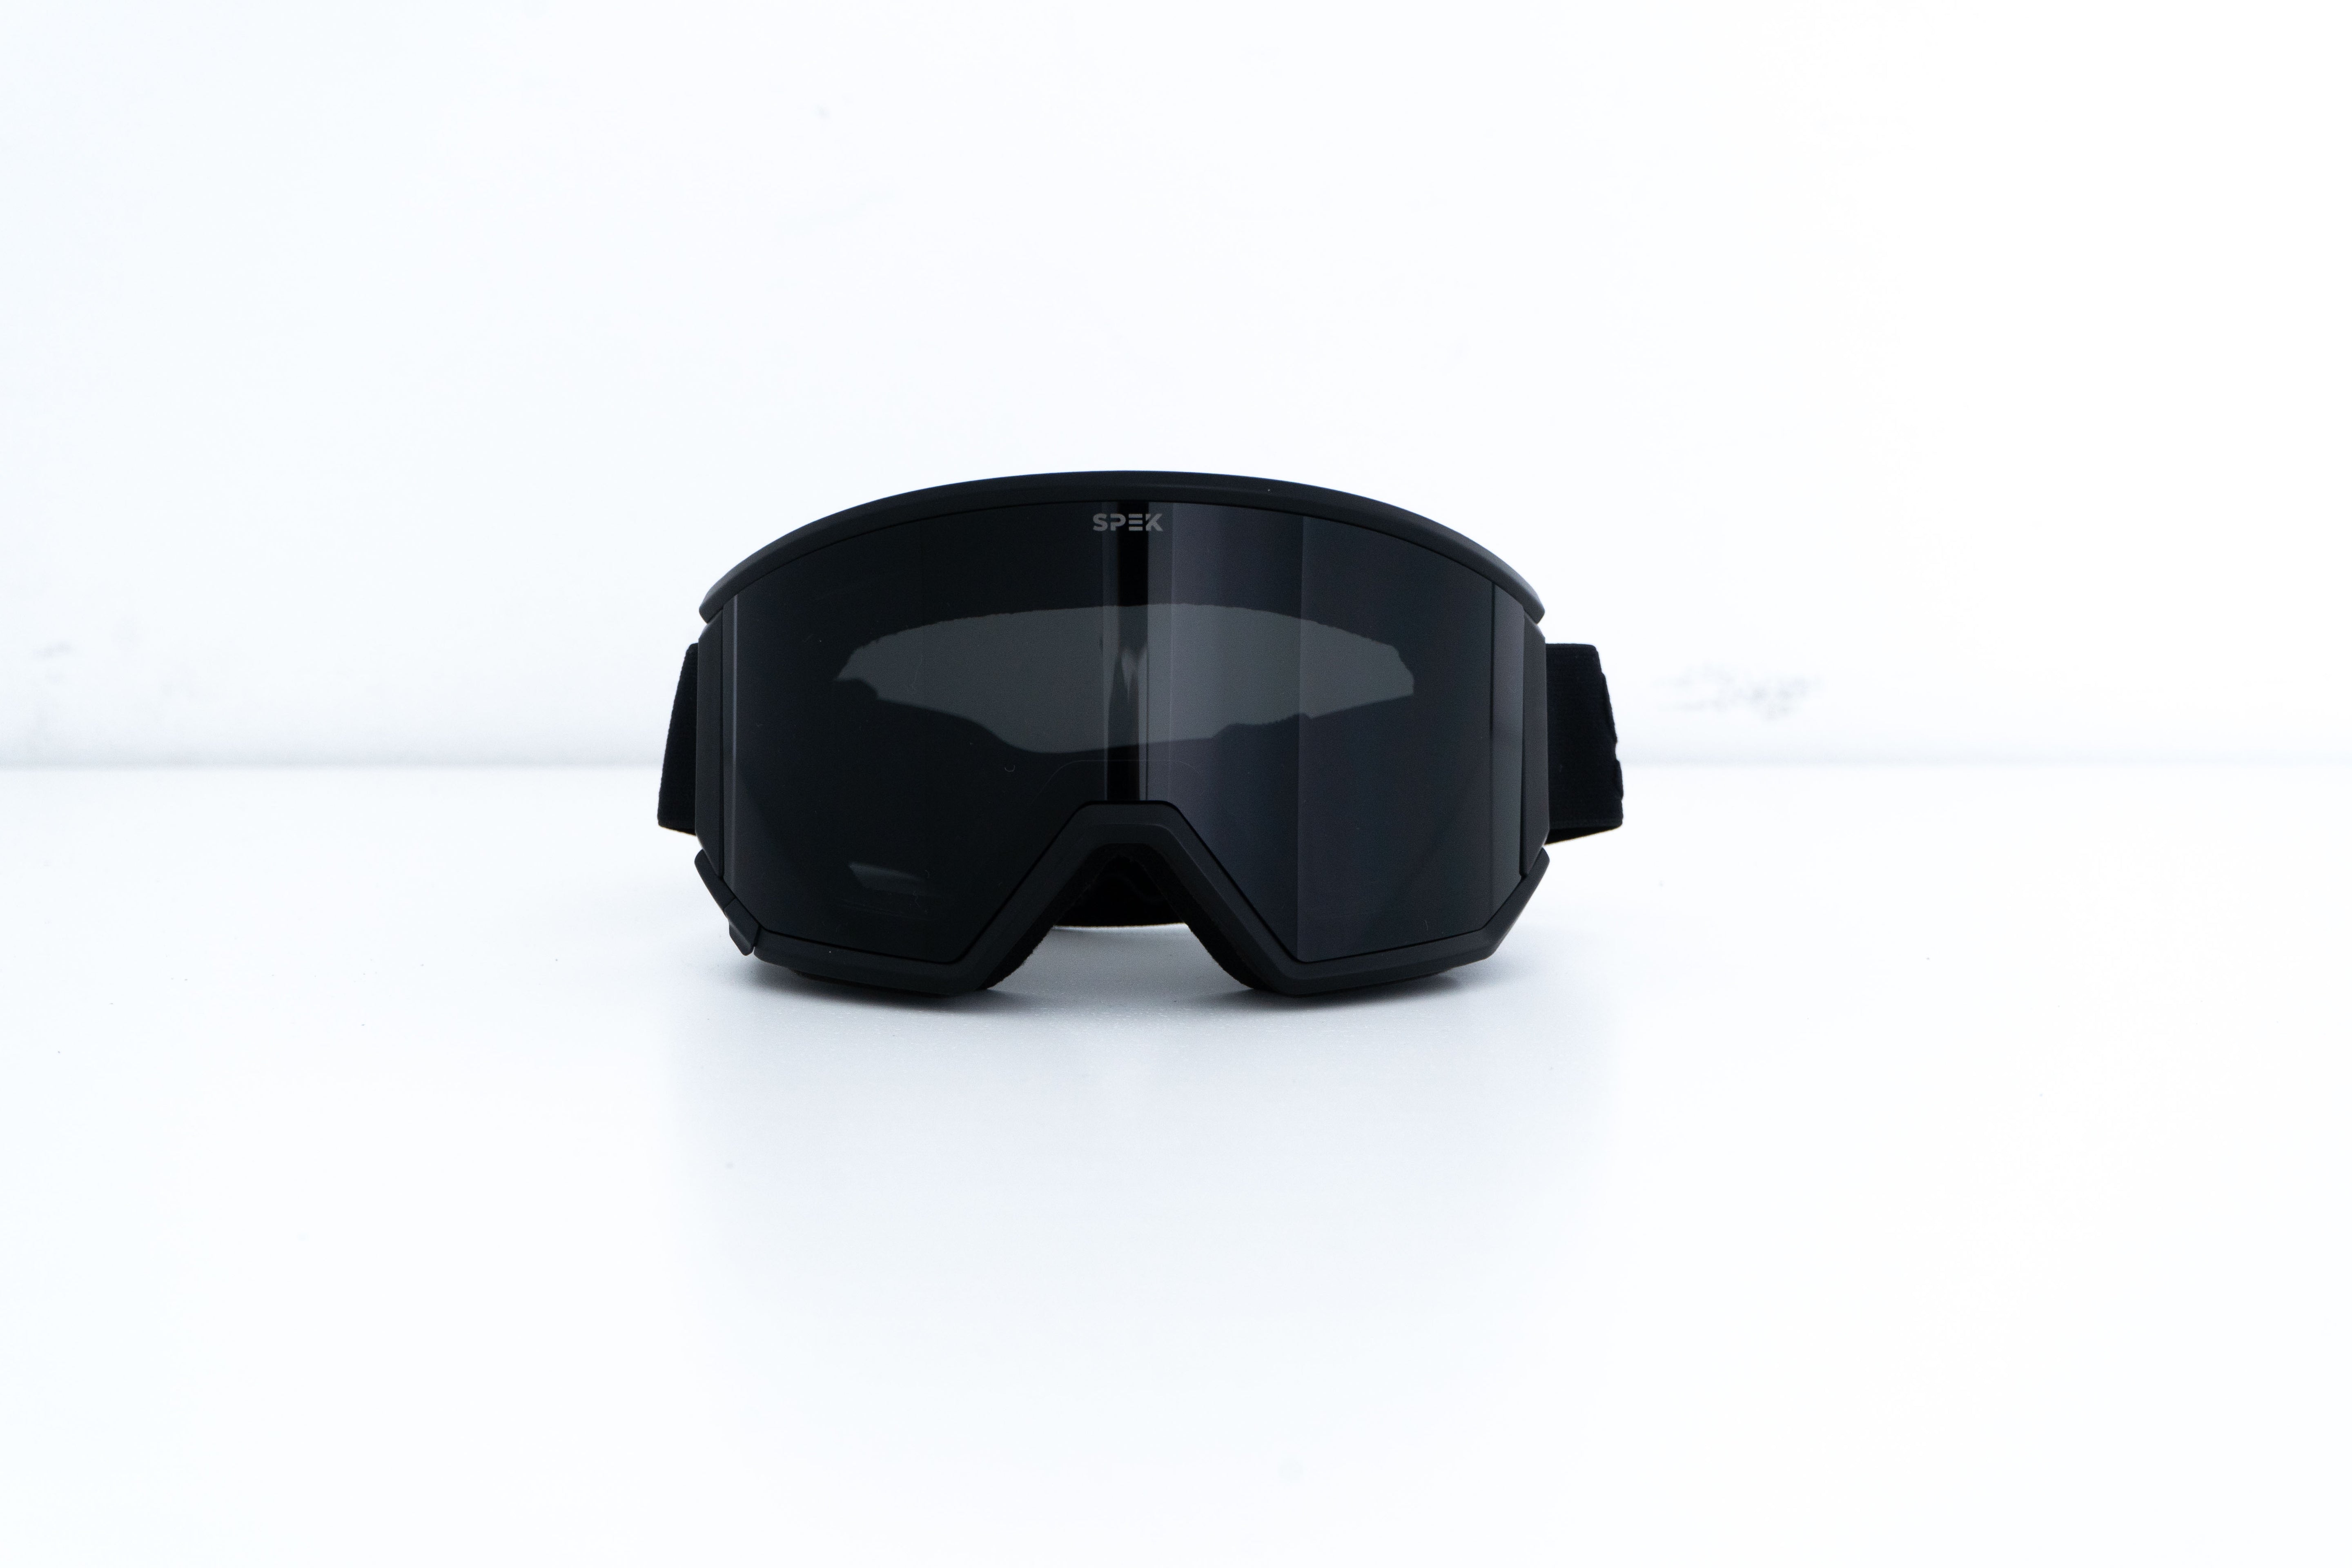 lunette de ski noir avec lentille noir